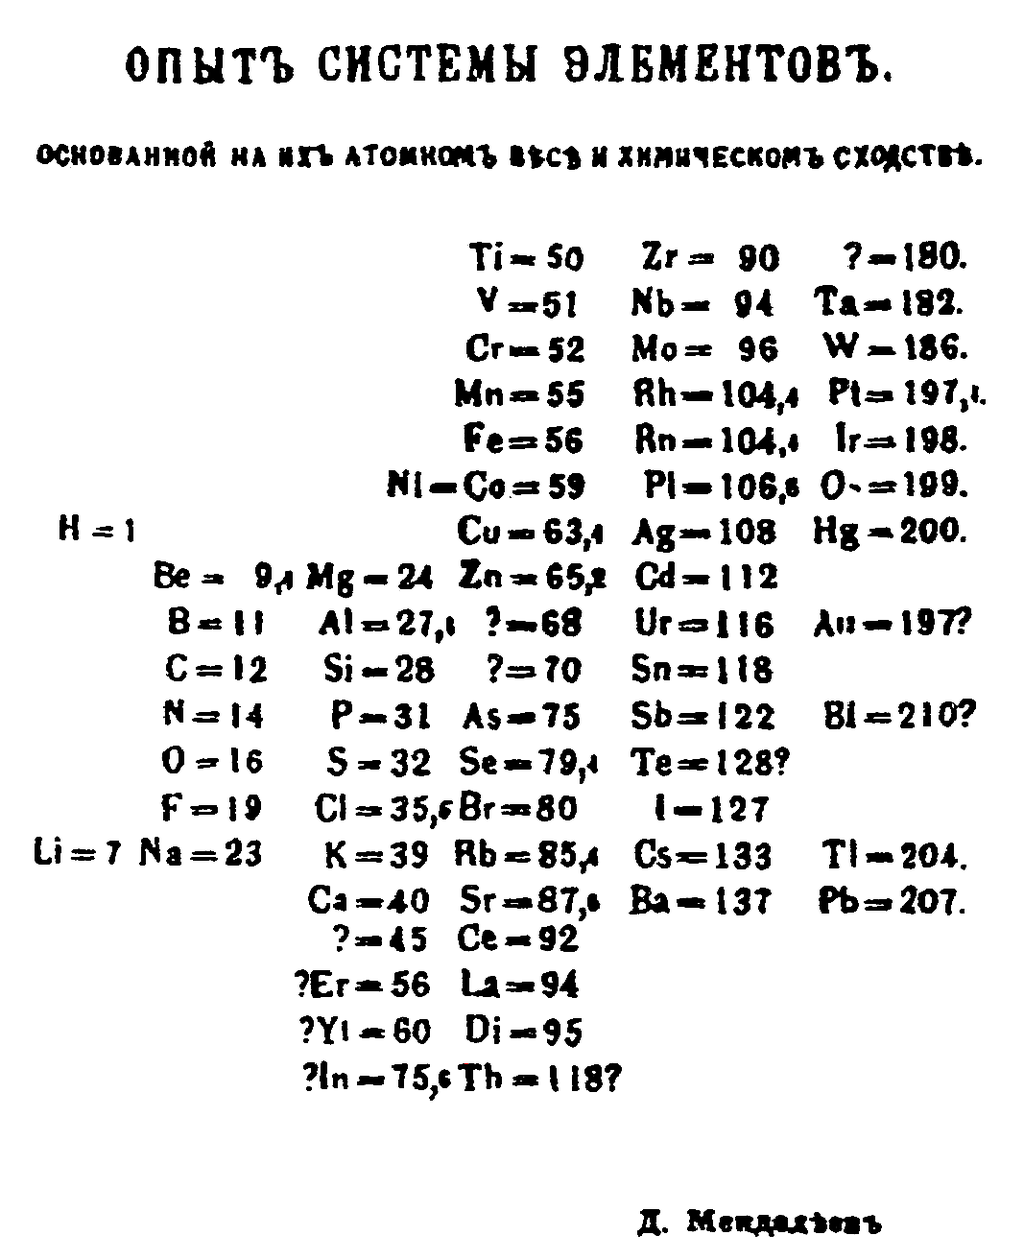 Tabela periódica proposta por Mendeleiev em 1869